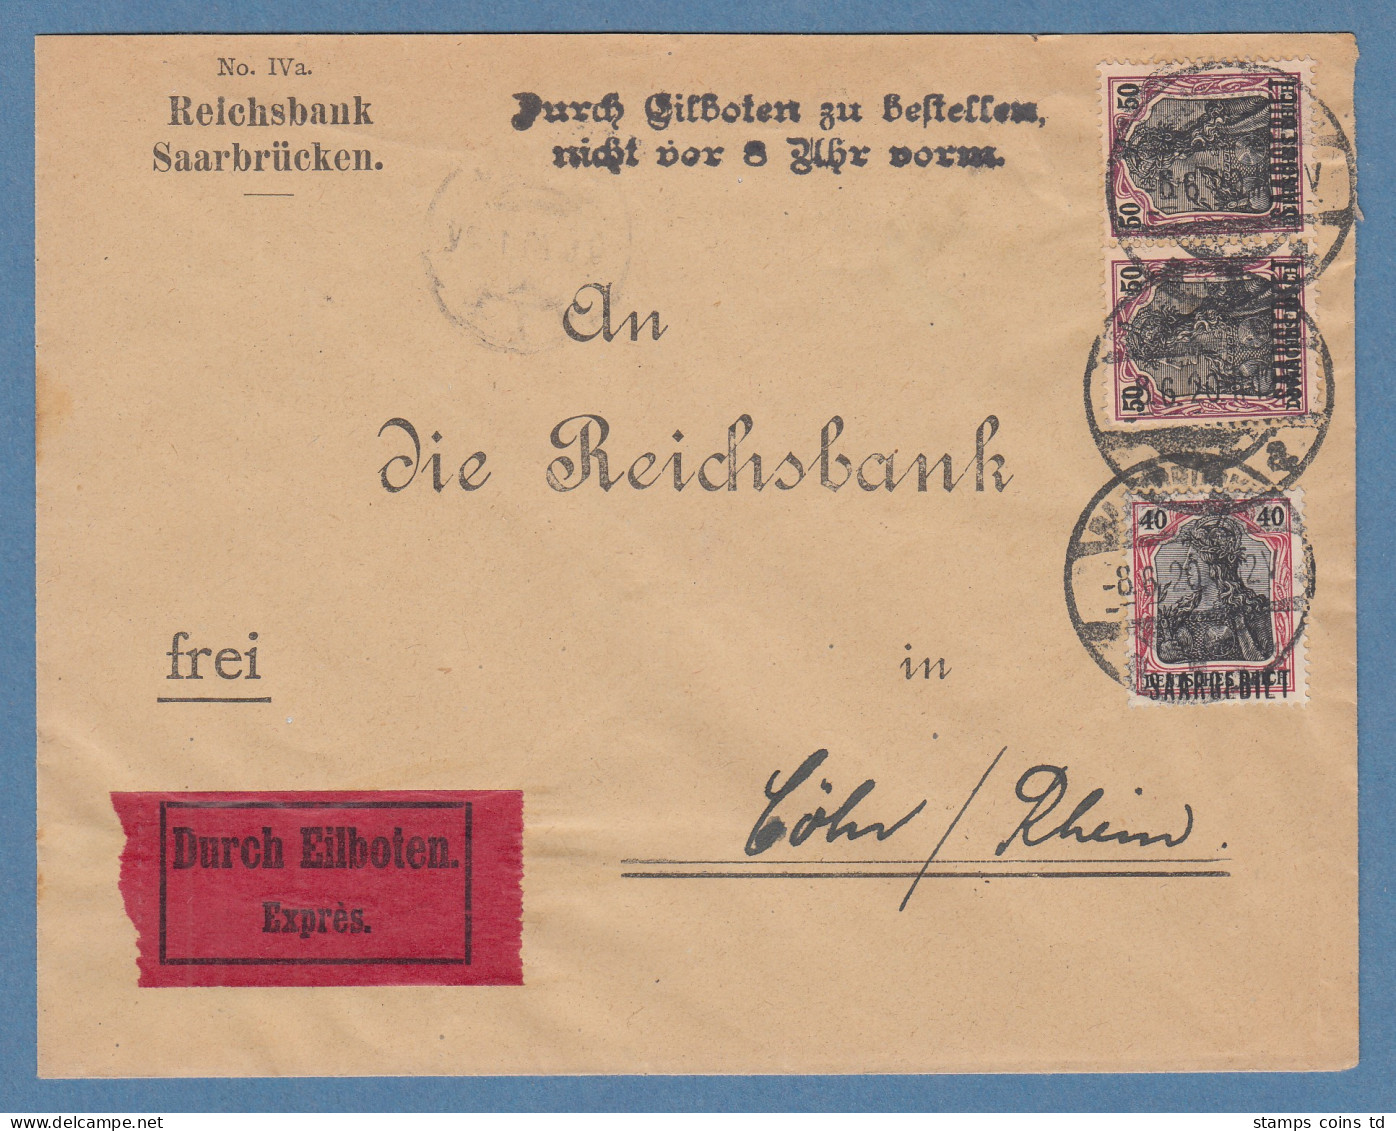 Saargebiet Mi.-Nr. 38 Waag. Paar Und 37 Auf Wert-Brief Aus Saarbrücken N. Köln - Cartas & Documentos